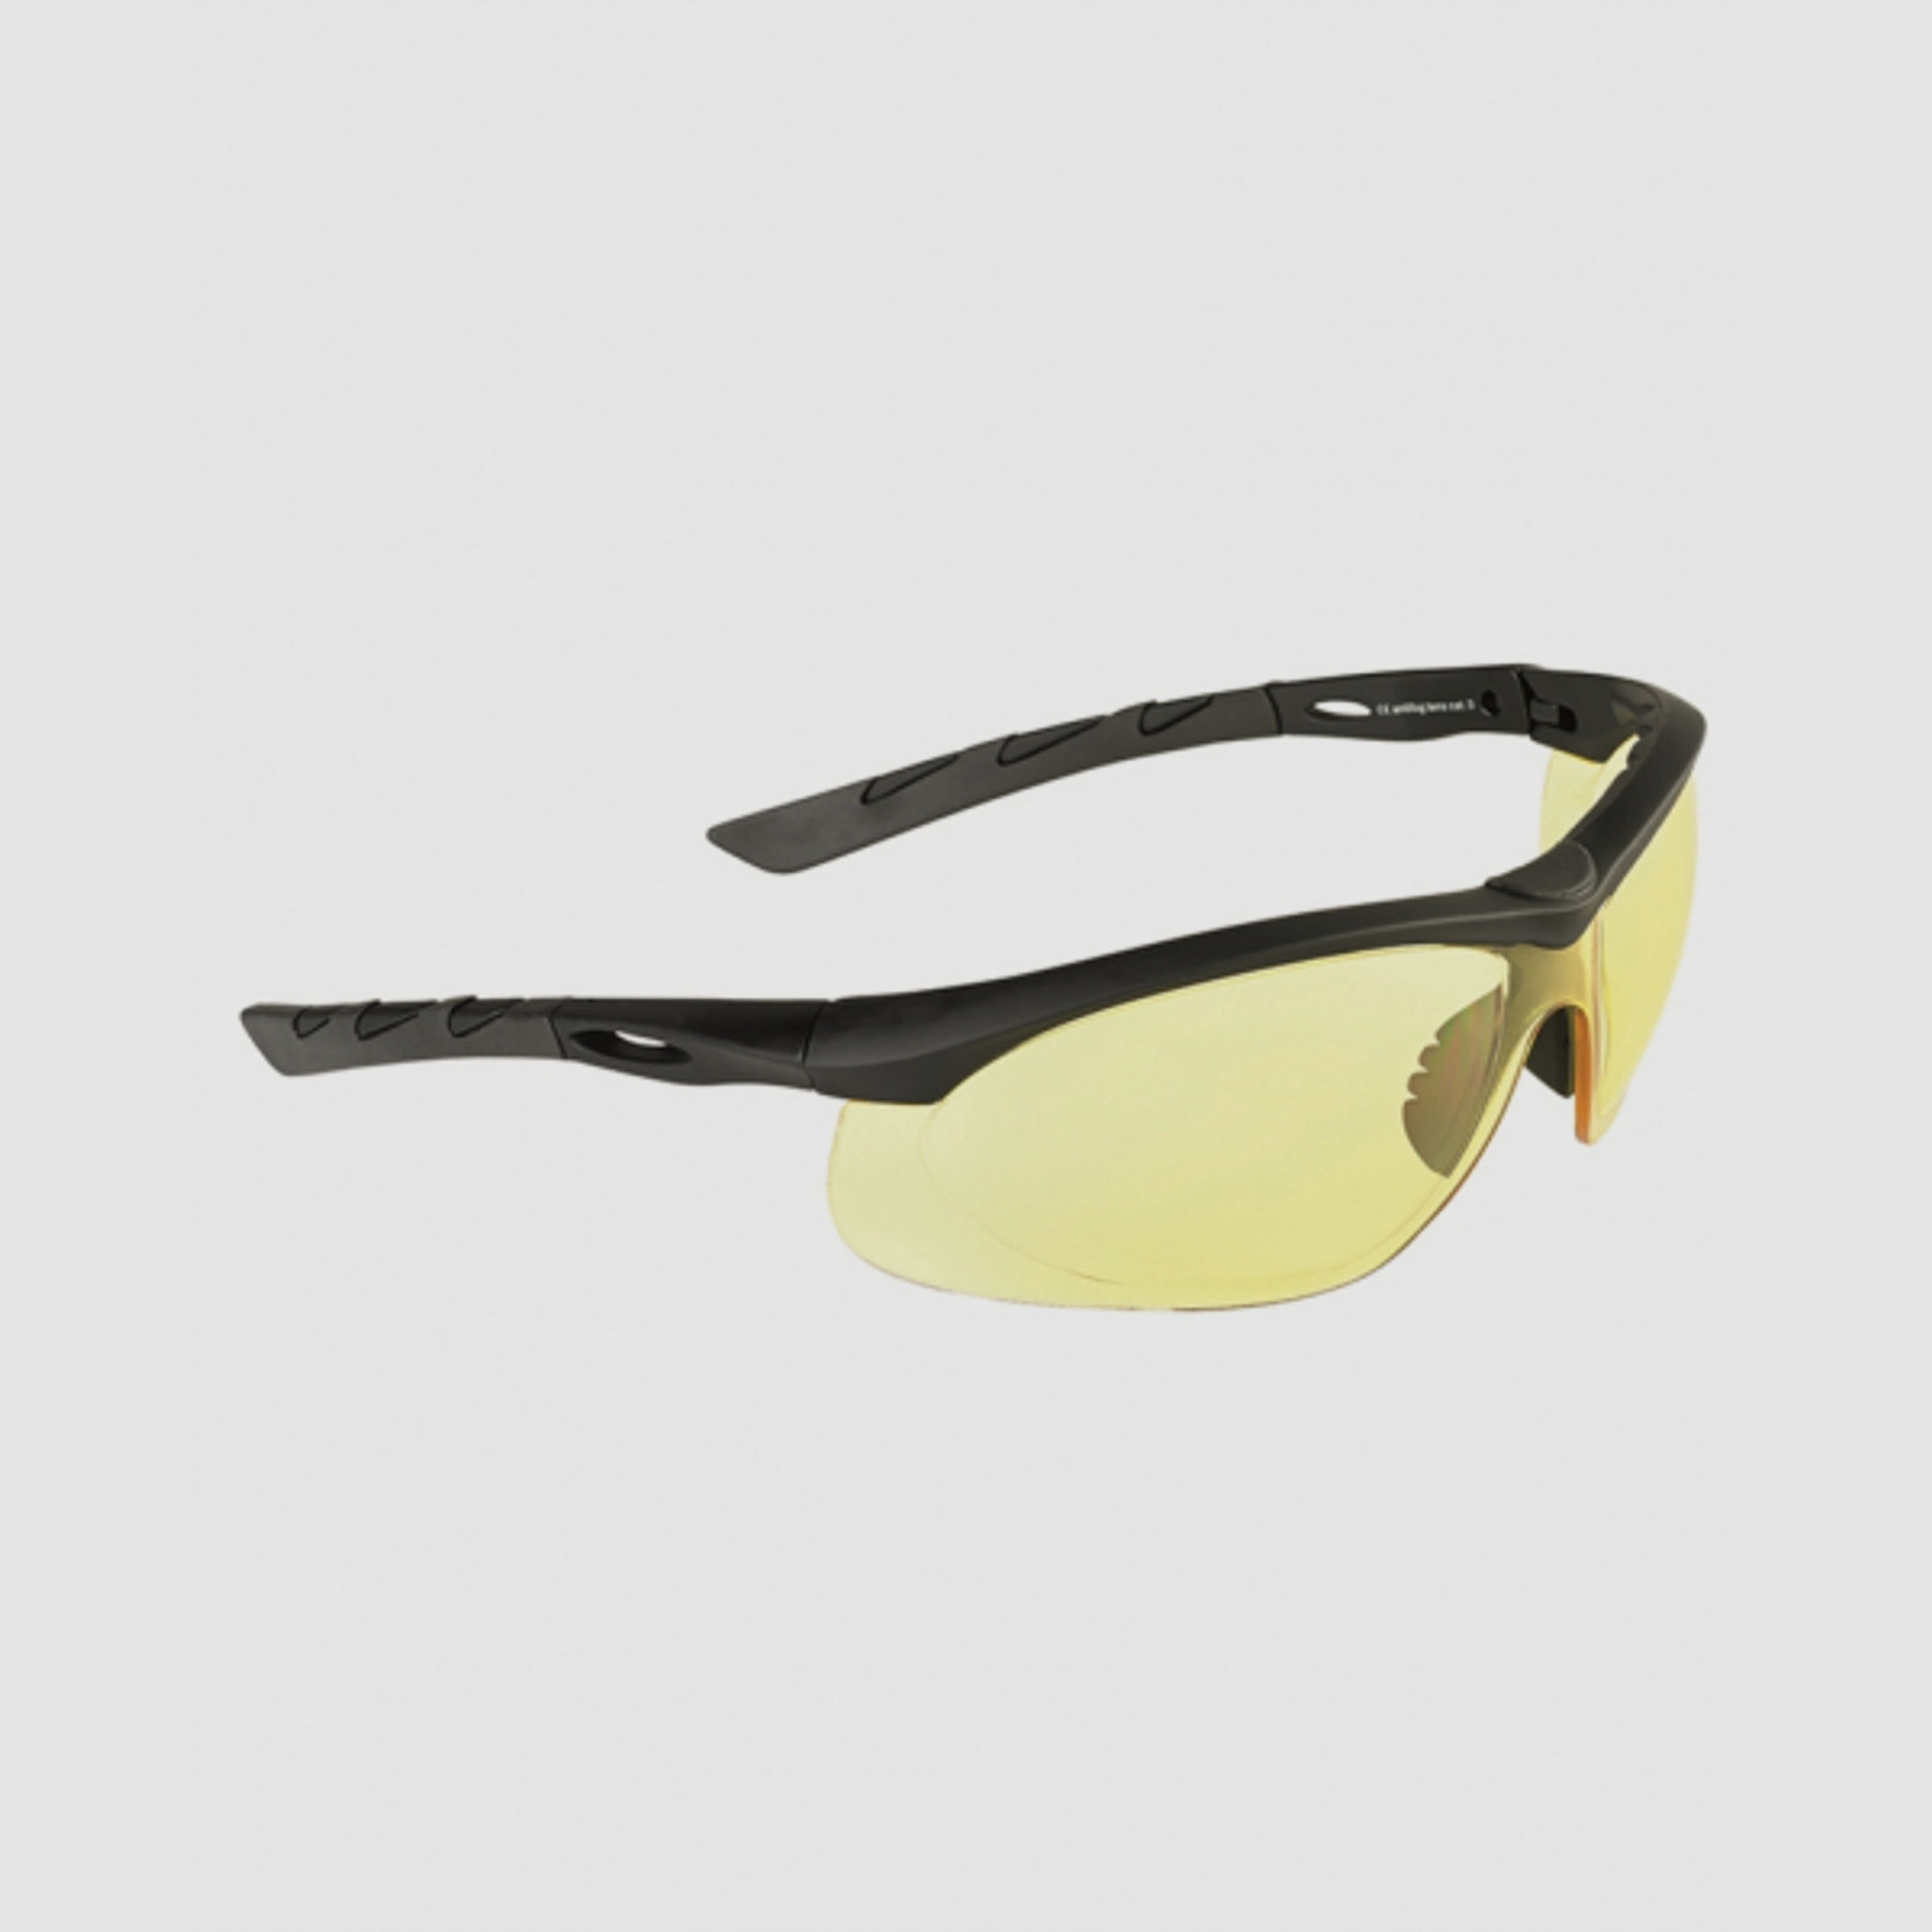 Schießbrille / Tactical Brille Swiss Eye® Lancer Gelb